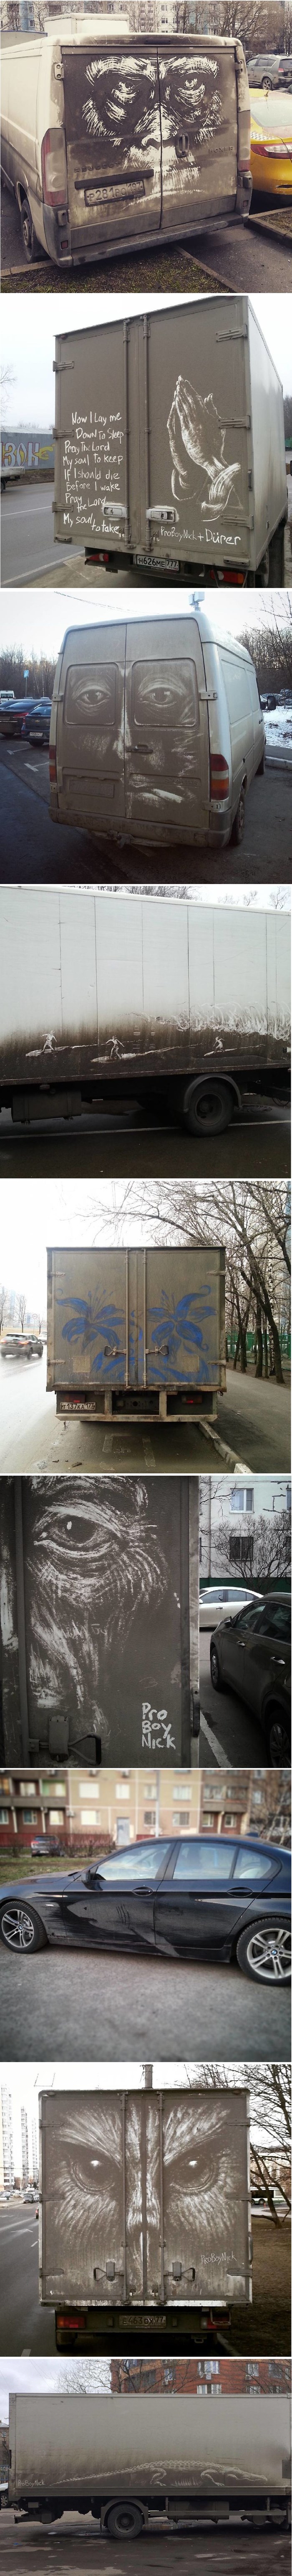 Ovaj je umjetnik slikarska platna zamijenio prljavim automobilima i kamionima